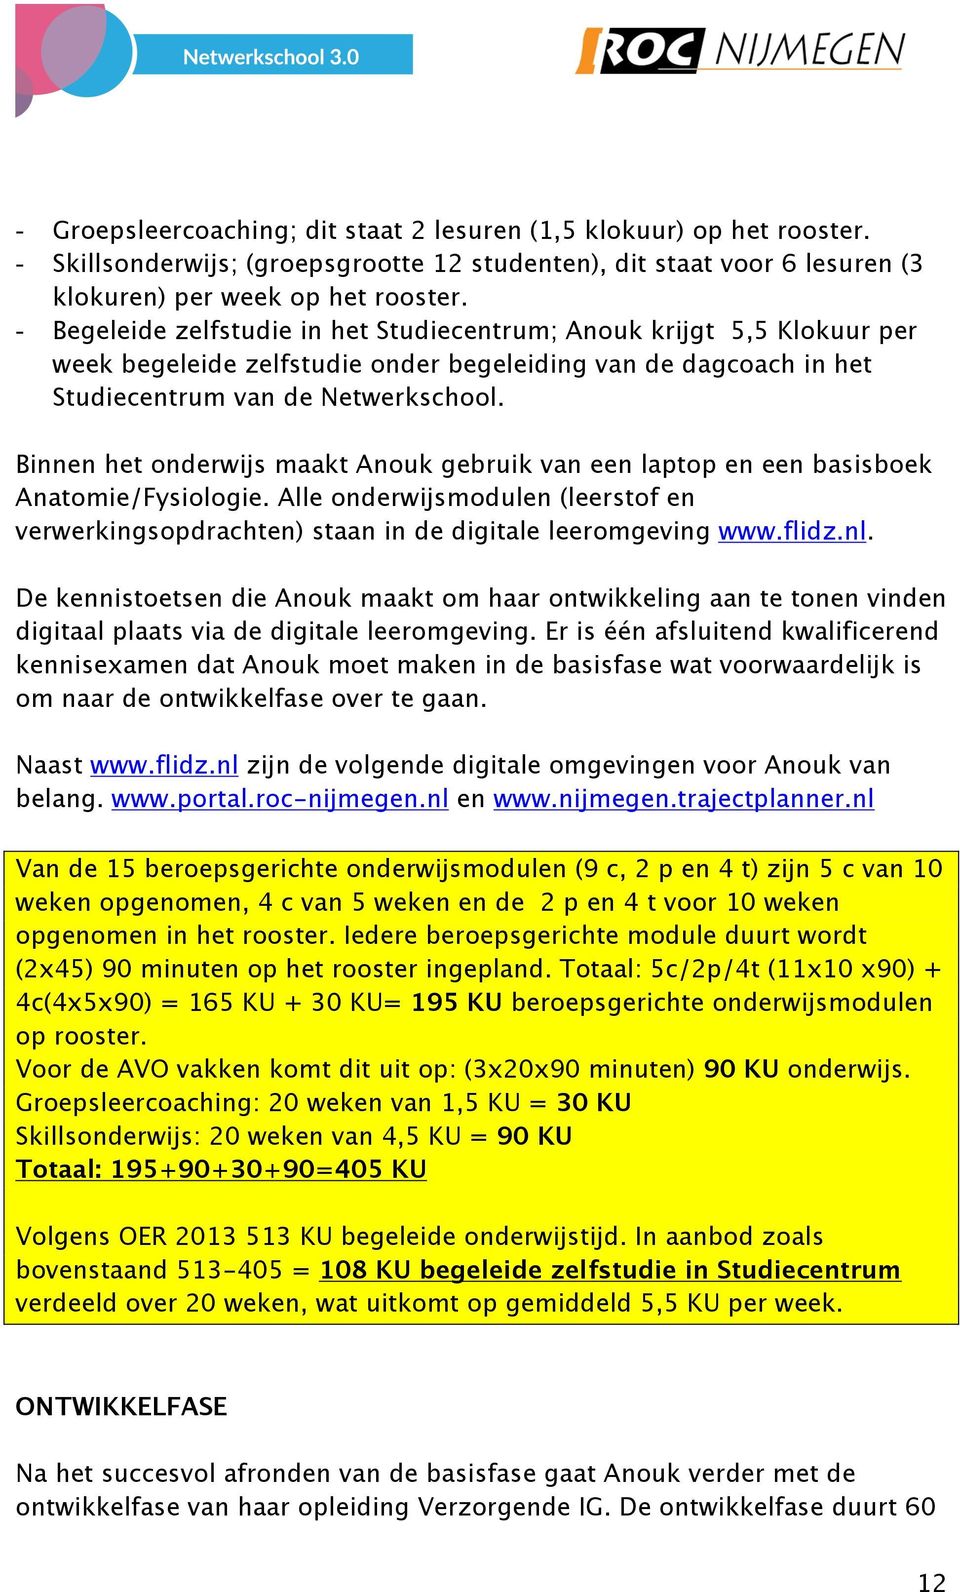 Binnen het onderwijs maakt Anouk gebruik van een laptop en een basisboek Anatomie/Fysiologie. Alle onderwijsmodulen (leerstof en verwerkingsopdrachten) staan in de digitale leeromgeving www.flidz.nl.